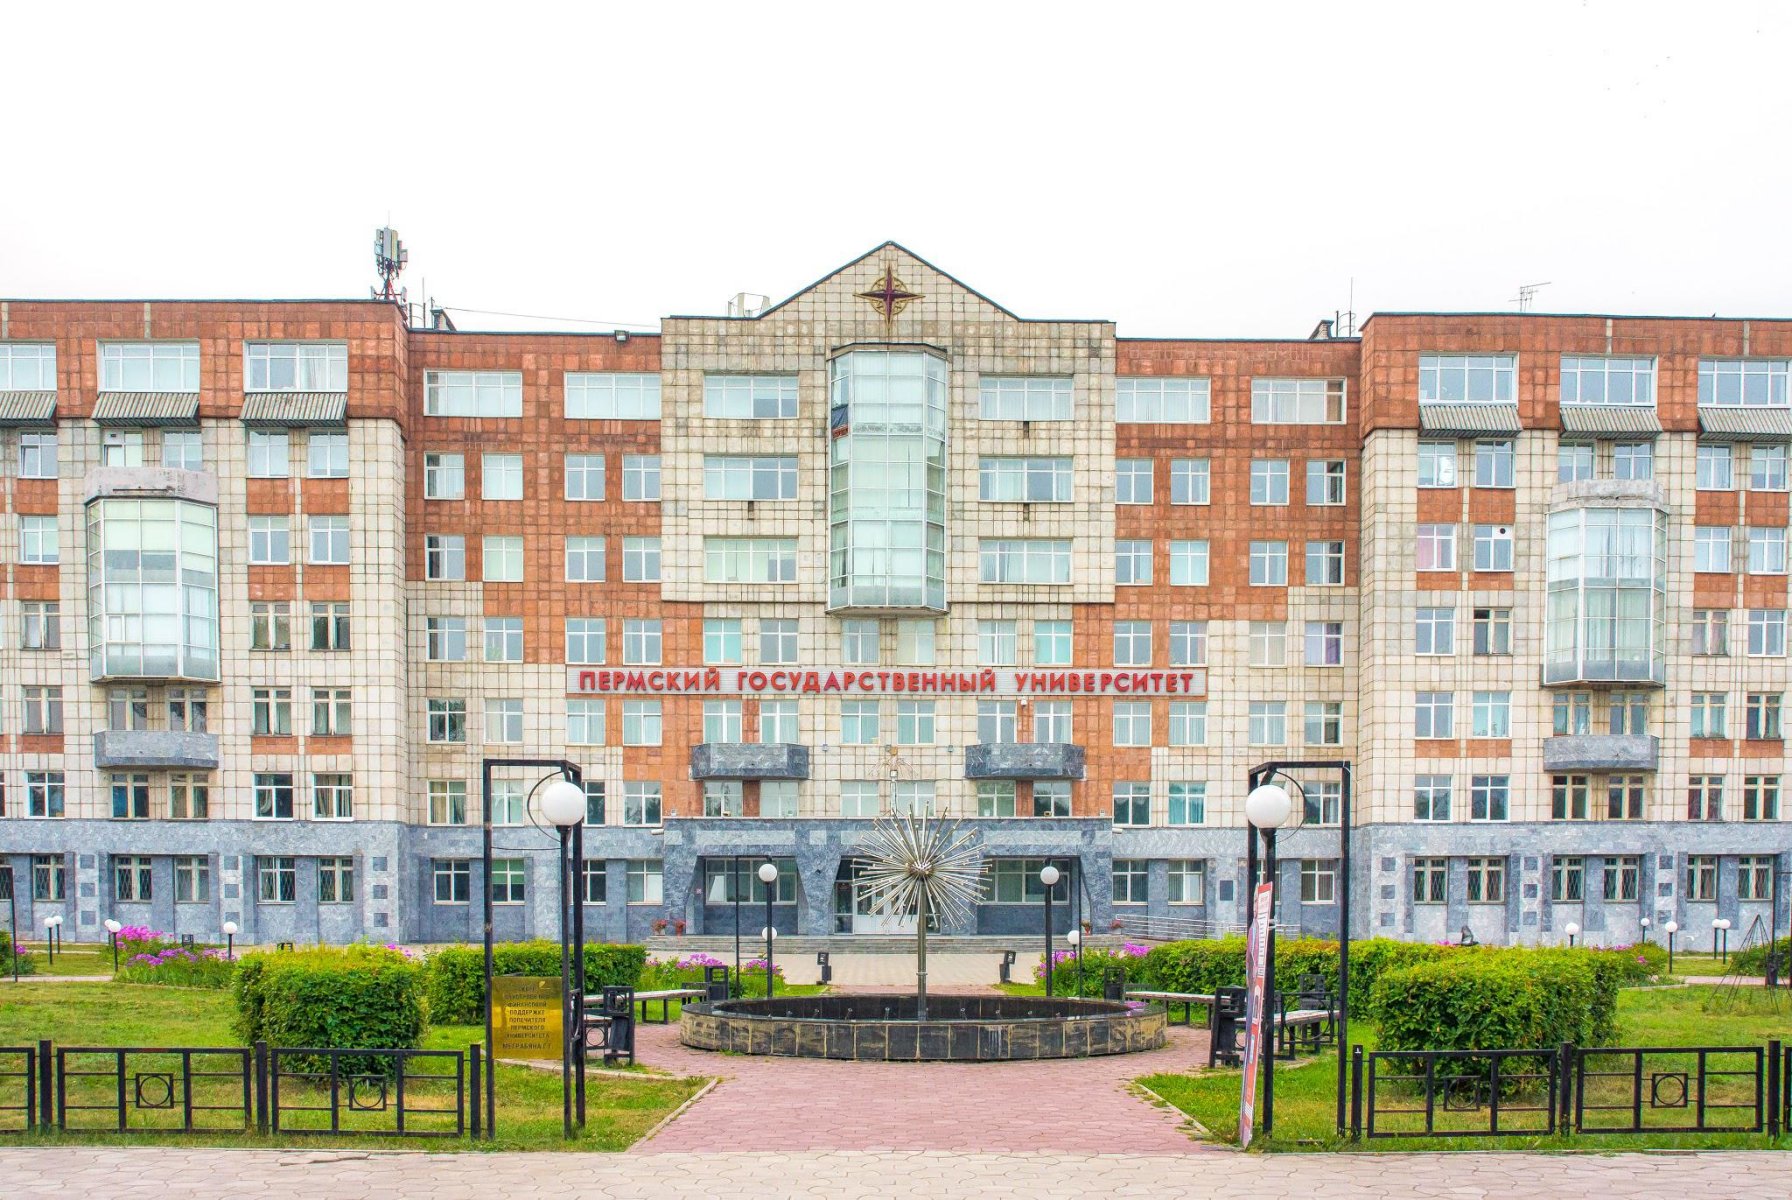 Выполненные работы - Усиление фундаментов комплекса зданий Пермского Государственного Университета (ПГНИУ)